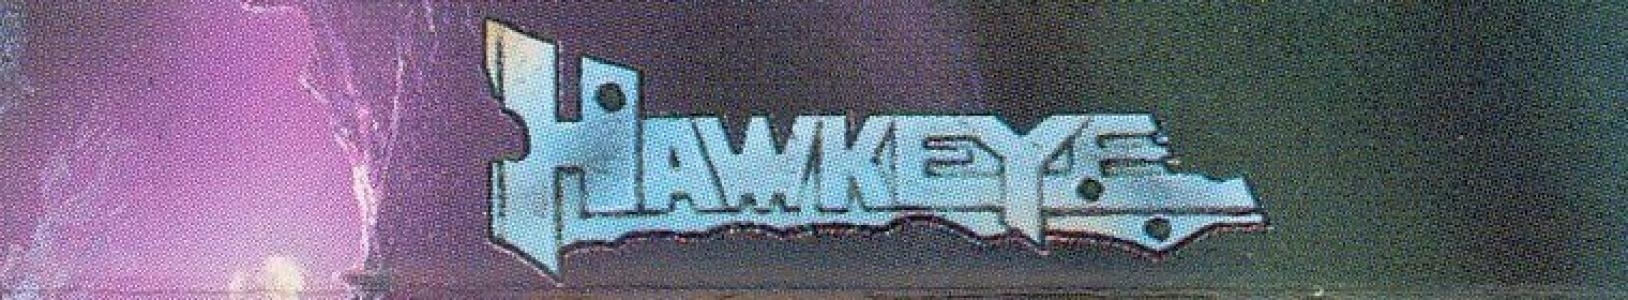 Hawkeye banner